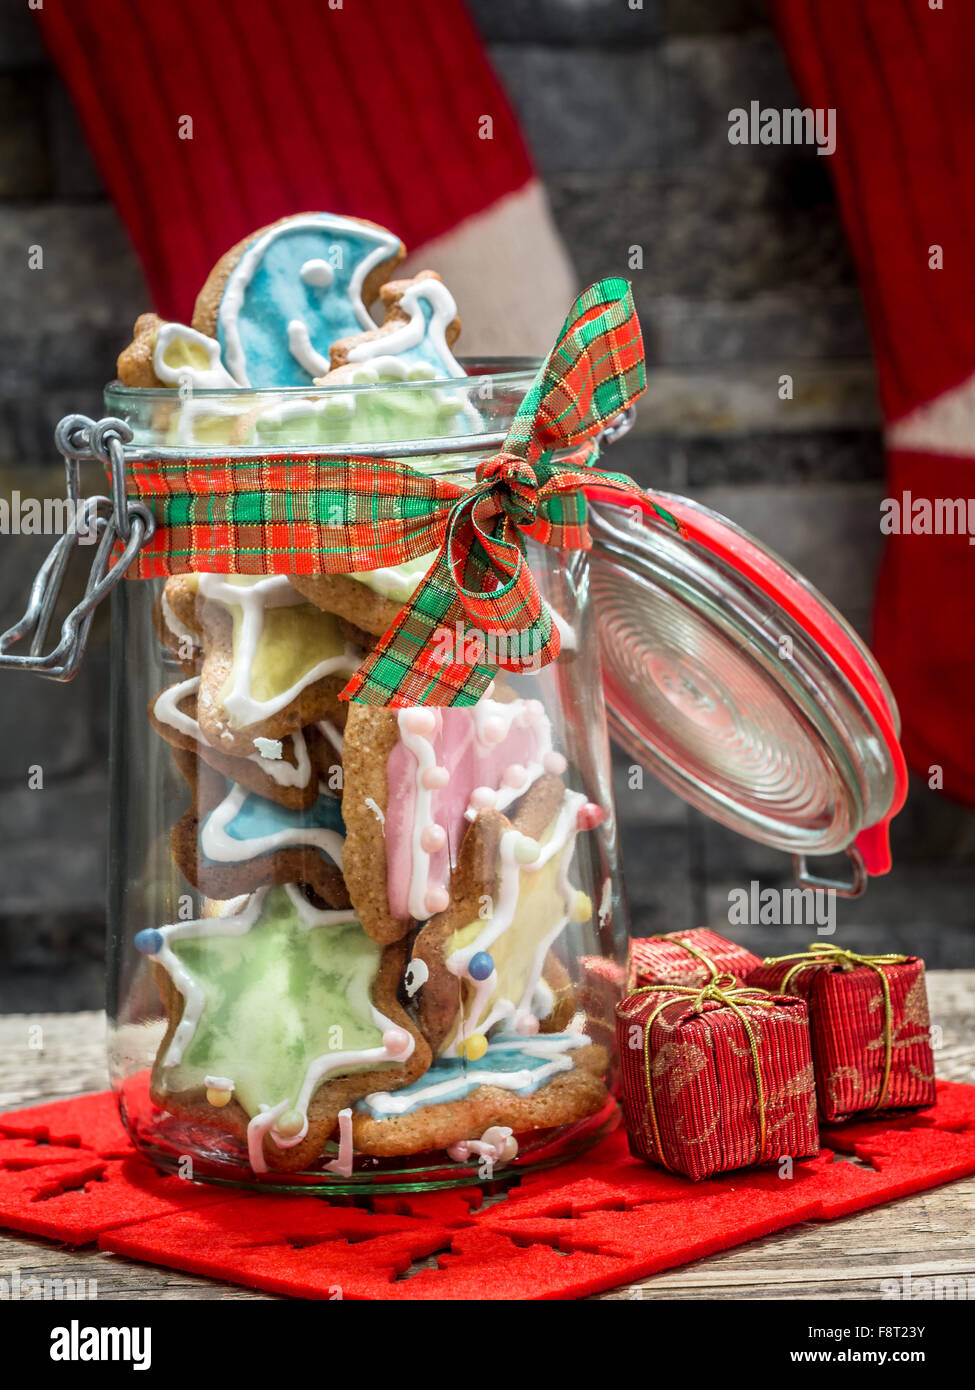 Assorted Christmas gingerbread cookies avec glaçage coloré dans un bocal en verre sur la table Banque D'Images